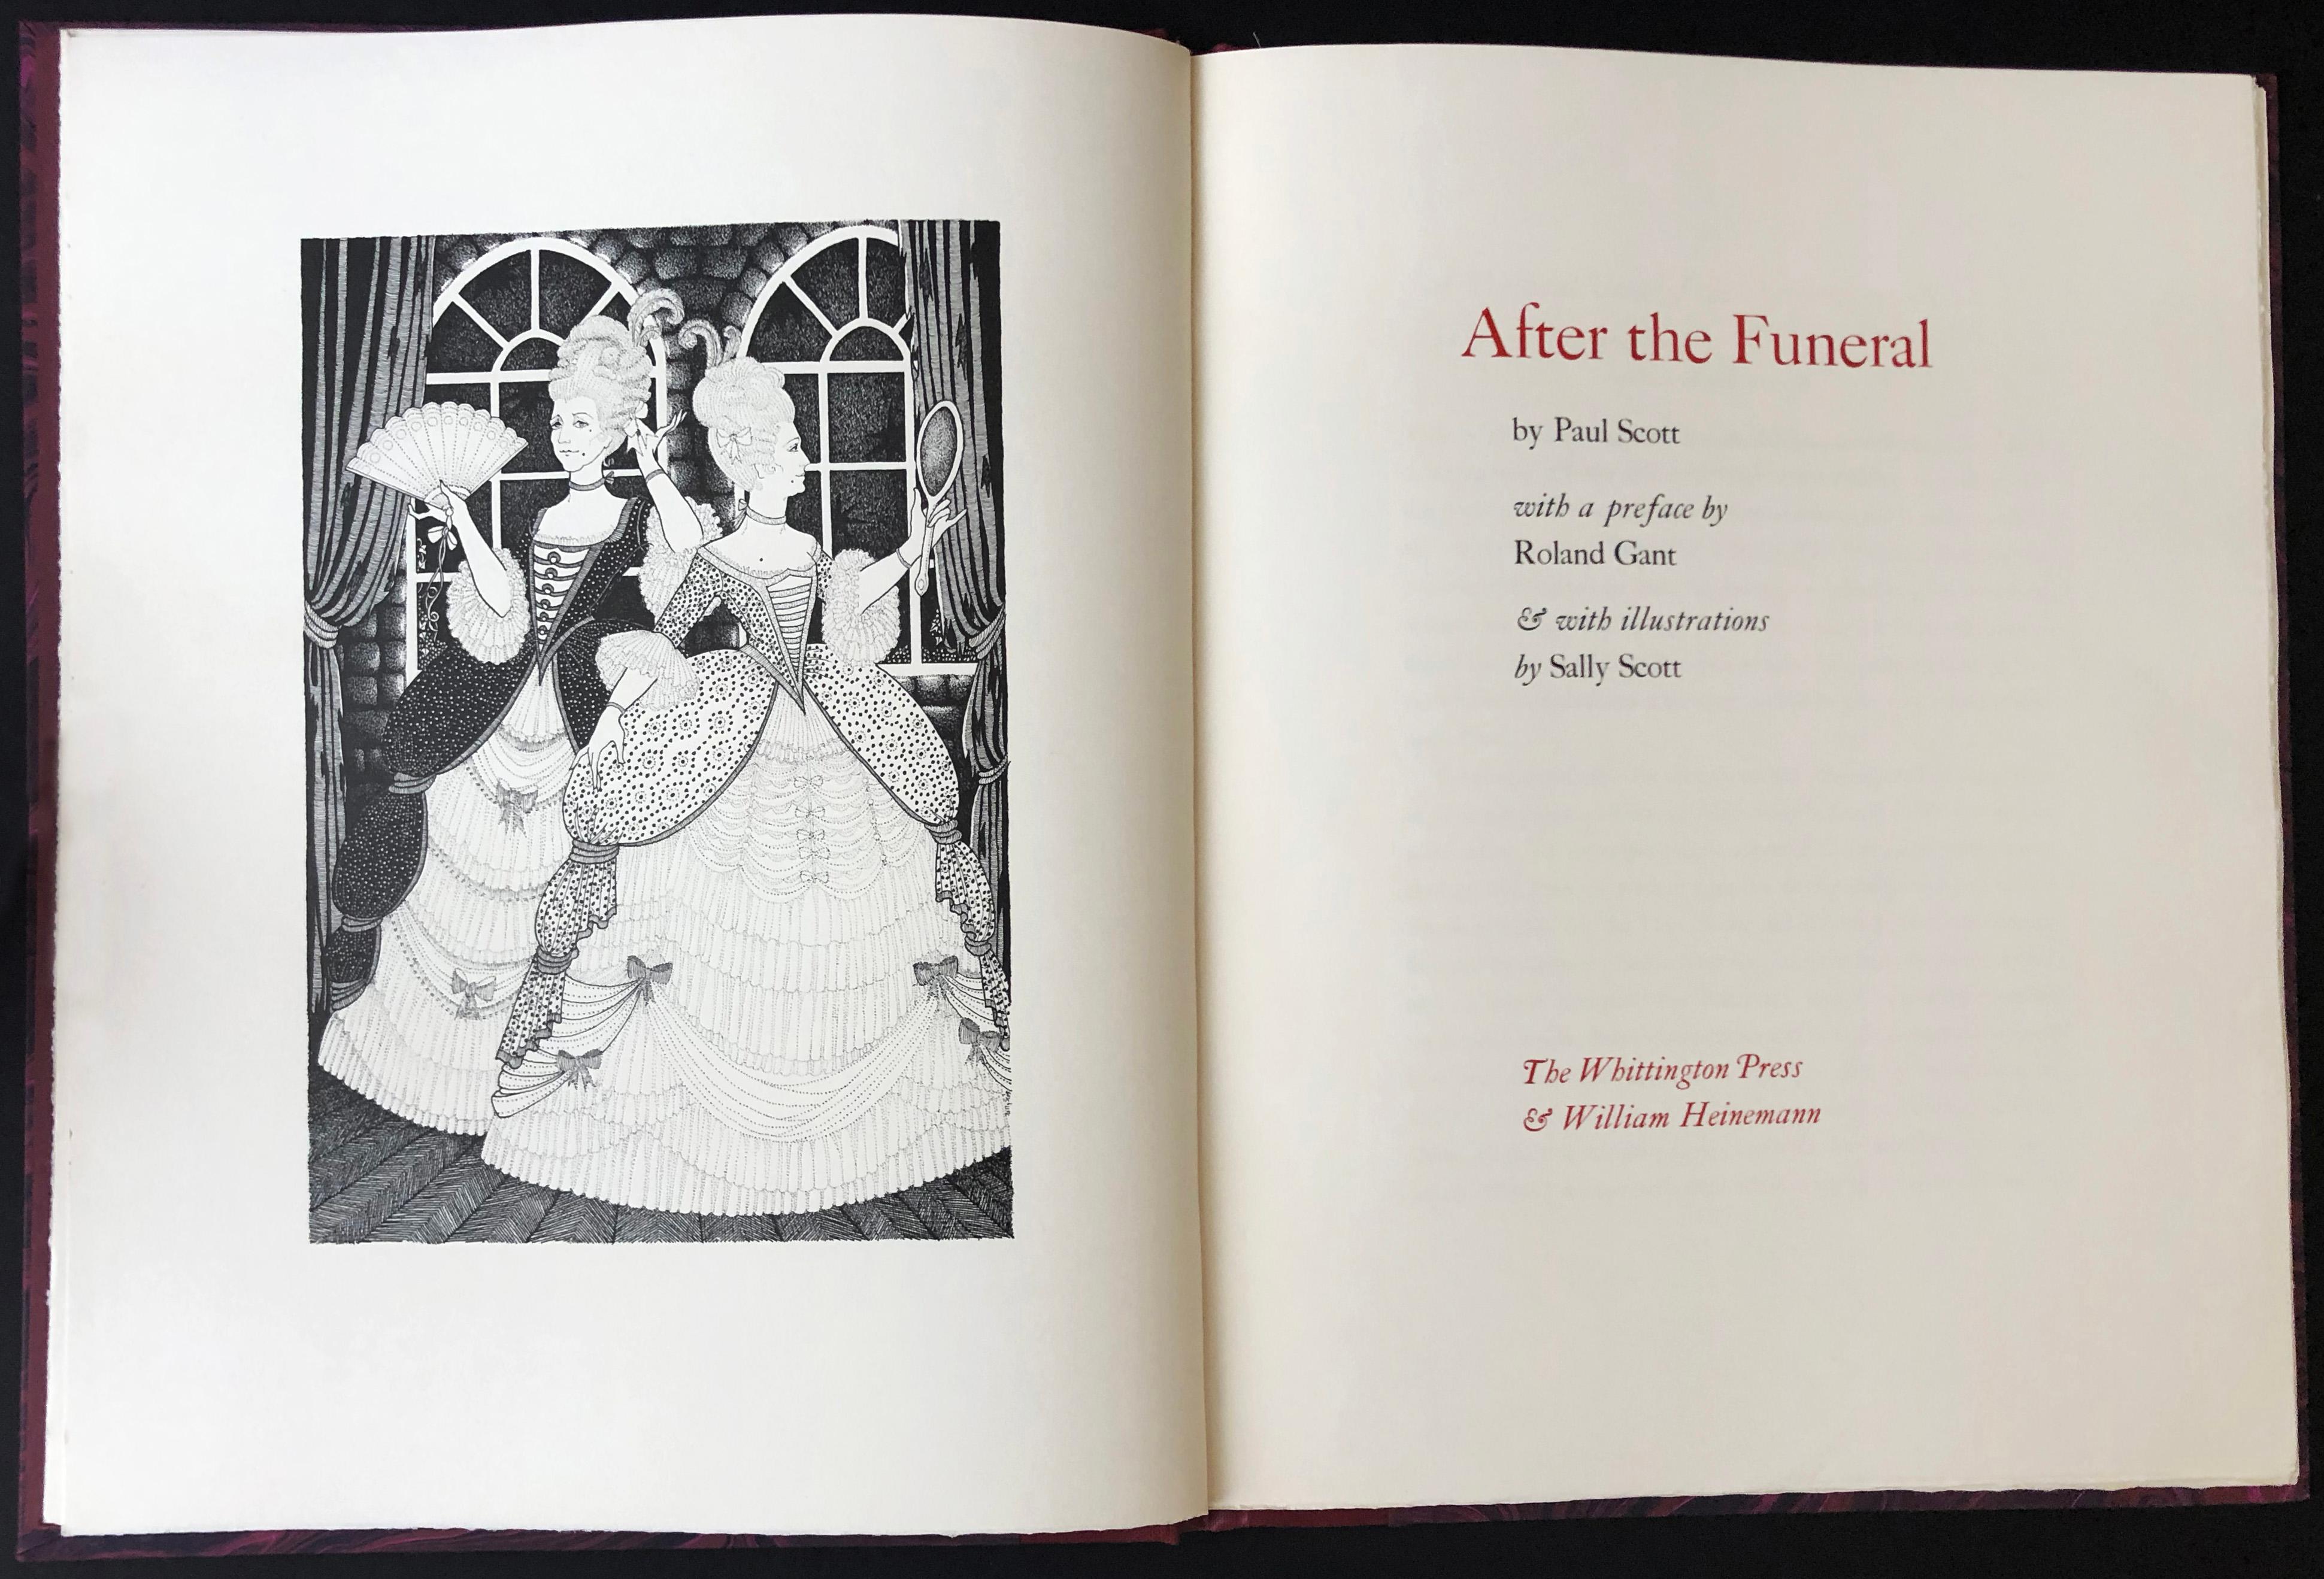 After the Funeral de Paul Scott, illustré par Sally Scott, avec une introduction de Roland Grant. 
Andoversford : Whittington Press & William Heinemann, 1979. Édition limitée. 
Royal 4to, 12 3/4 x 10 in. (320 x 250 mm), pp. xvi + 22 + vi. Avec 8